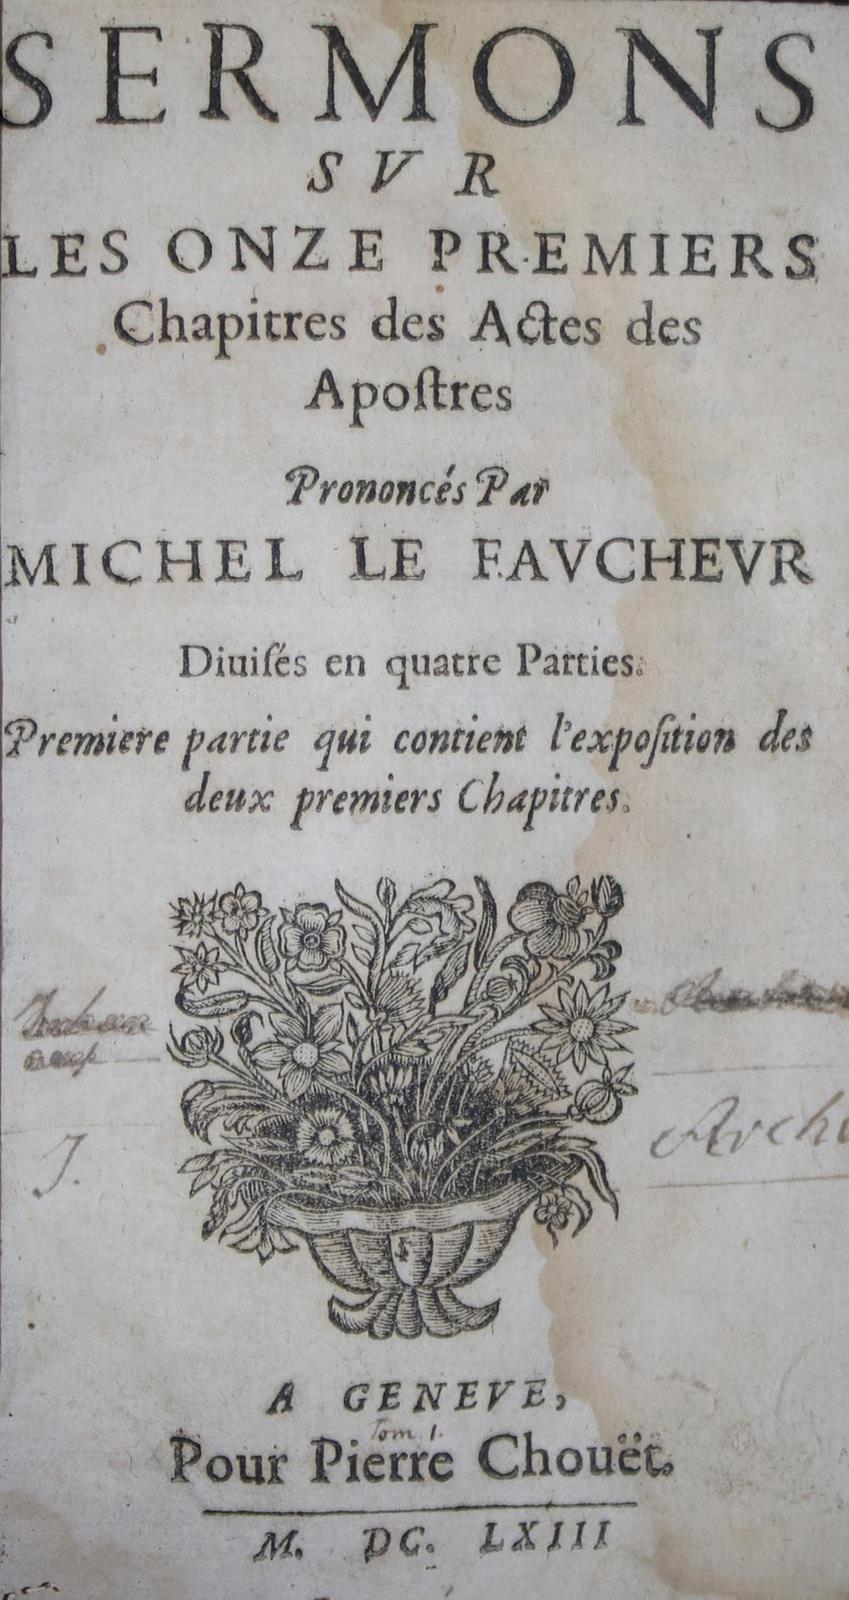 Le Faucheur,M. | Bild Nr.1